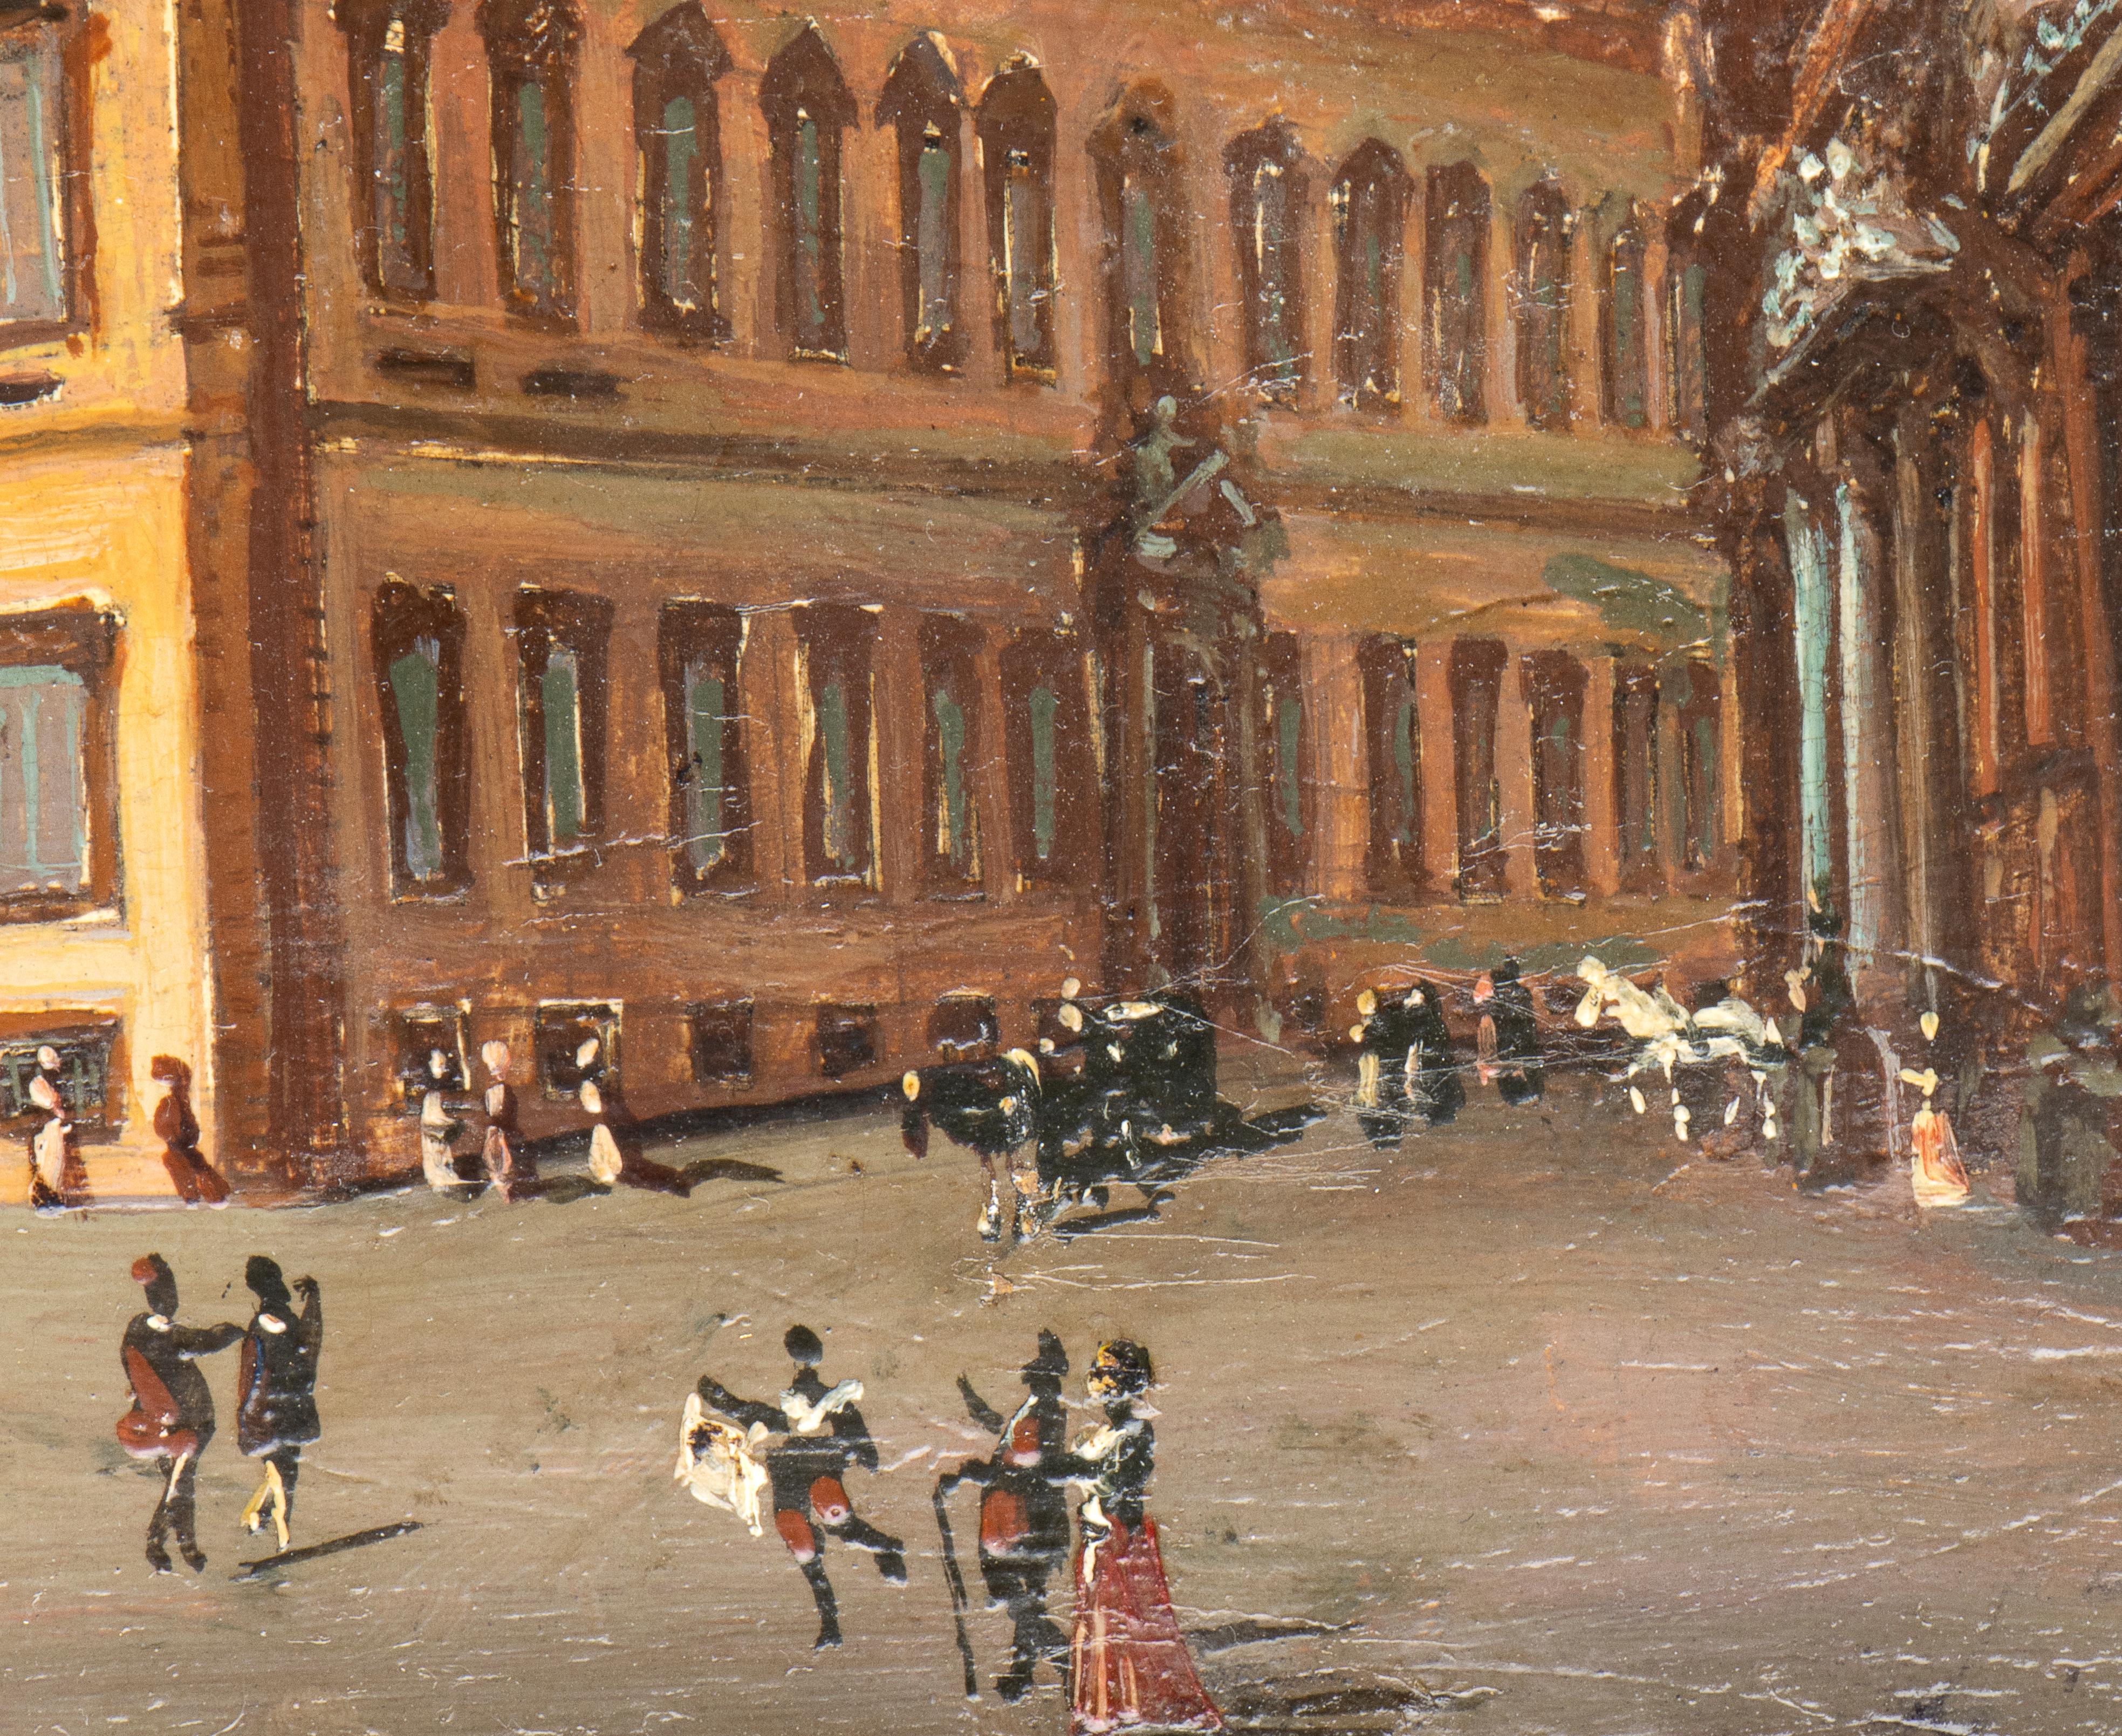 Ein sehr interessantes Gemälde, das eine  Blick auf den Palazzo del Quirinale und den Palazzo della Consulta. Das Künstlerporträt eine wichtige Beschreibung von  Diese Gebäude legen den Schwerpunkt auf Details, die den Betrachter alles verstehen